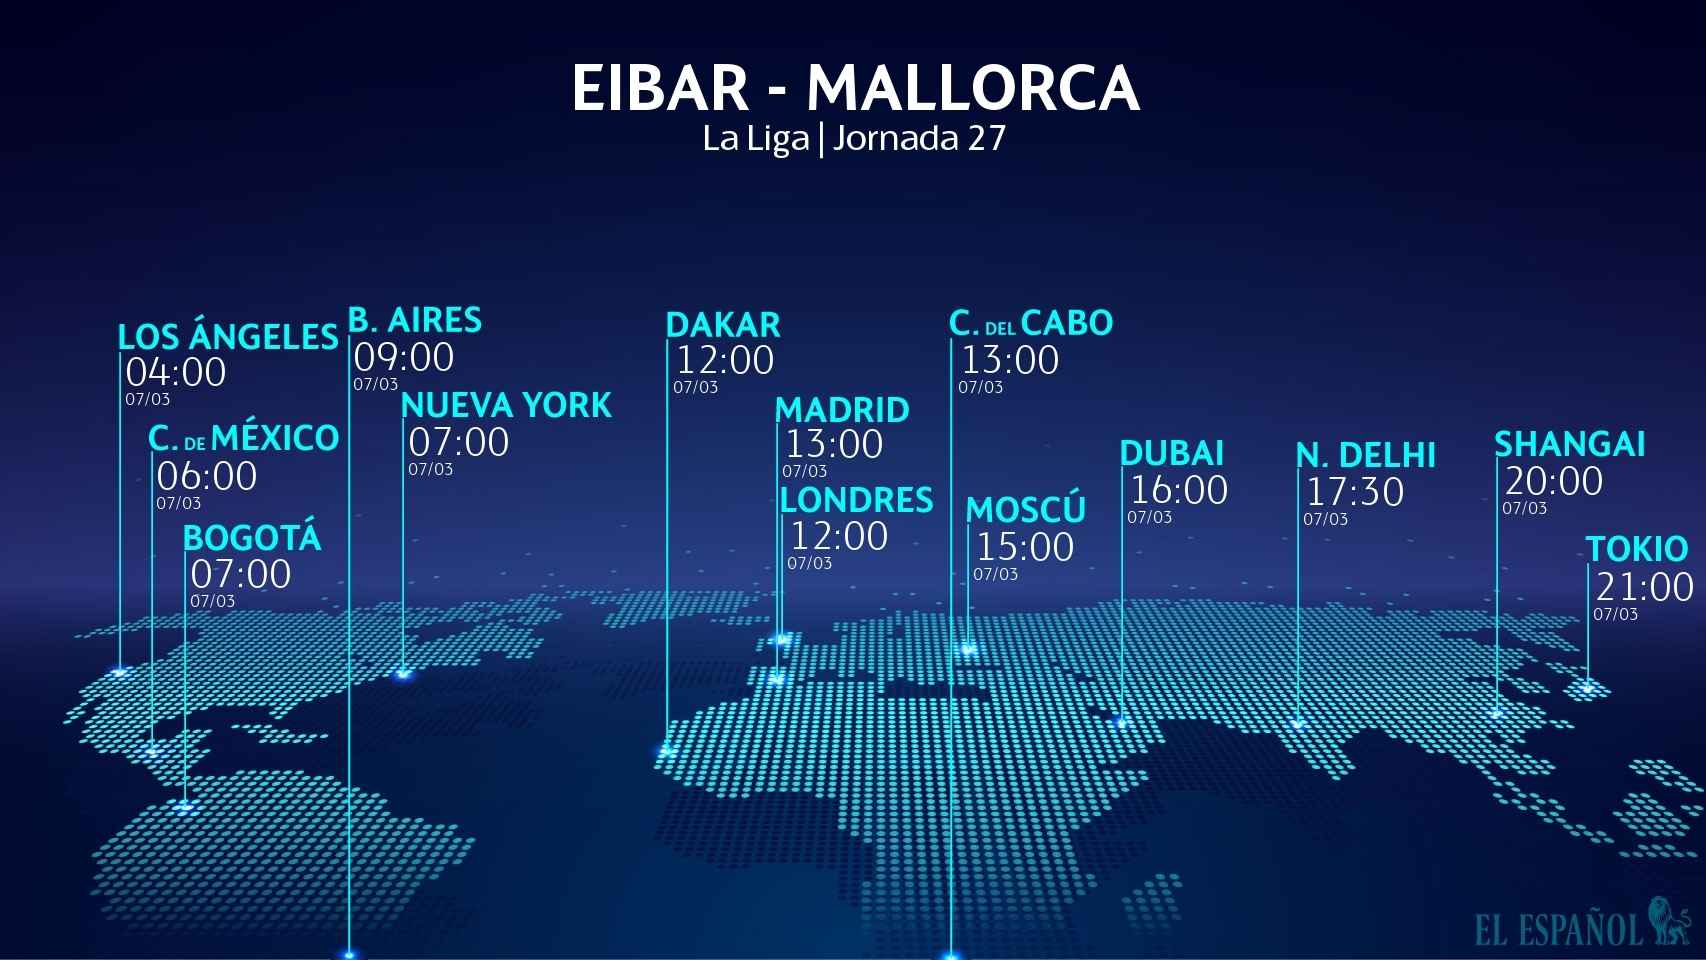 Eibar - Mallorca